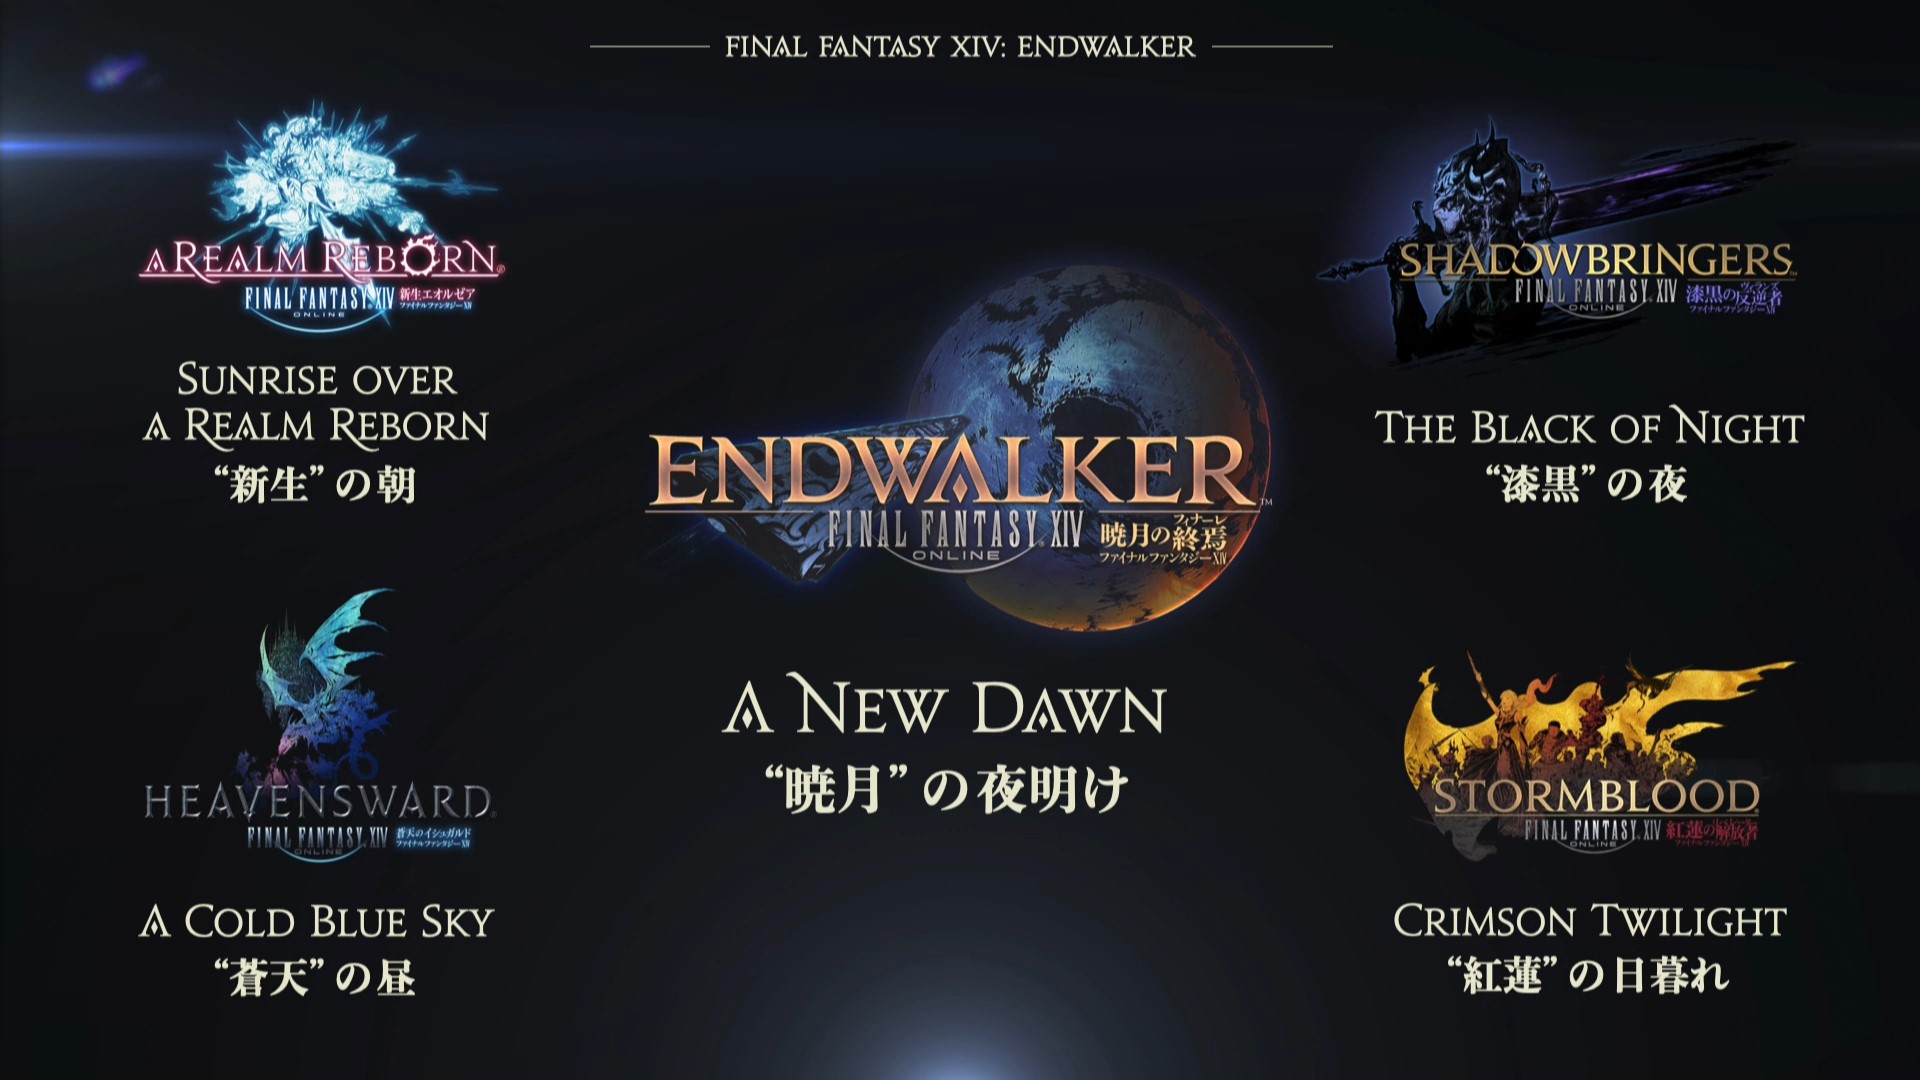 FFXIV 6.0 Endwalker: A New Dawn